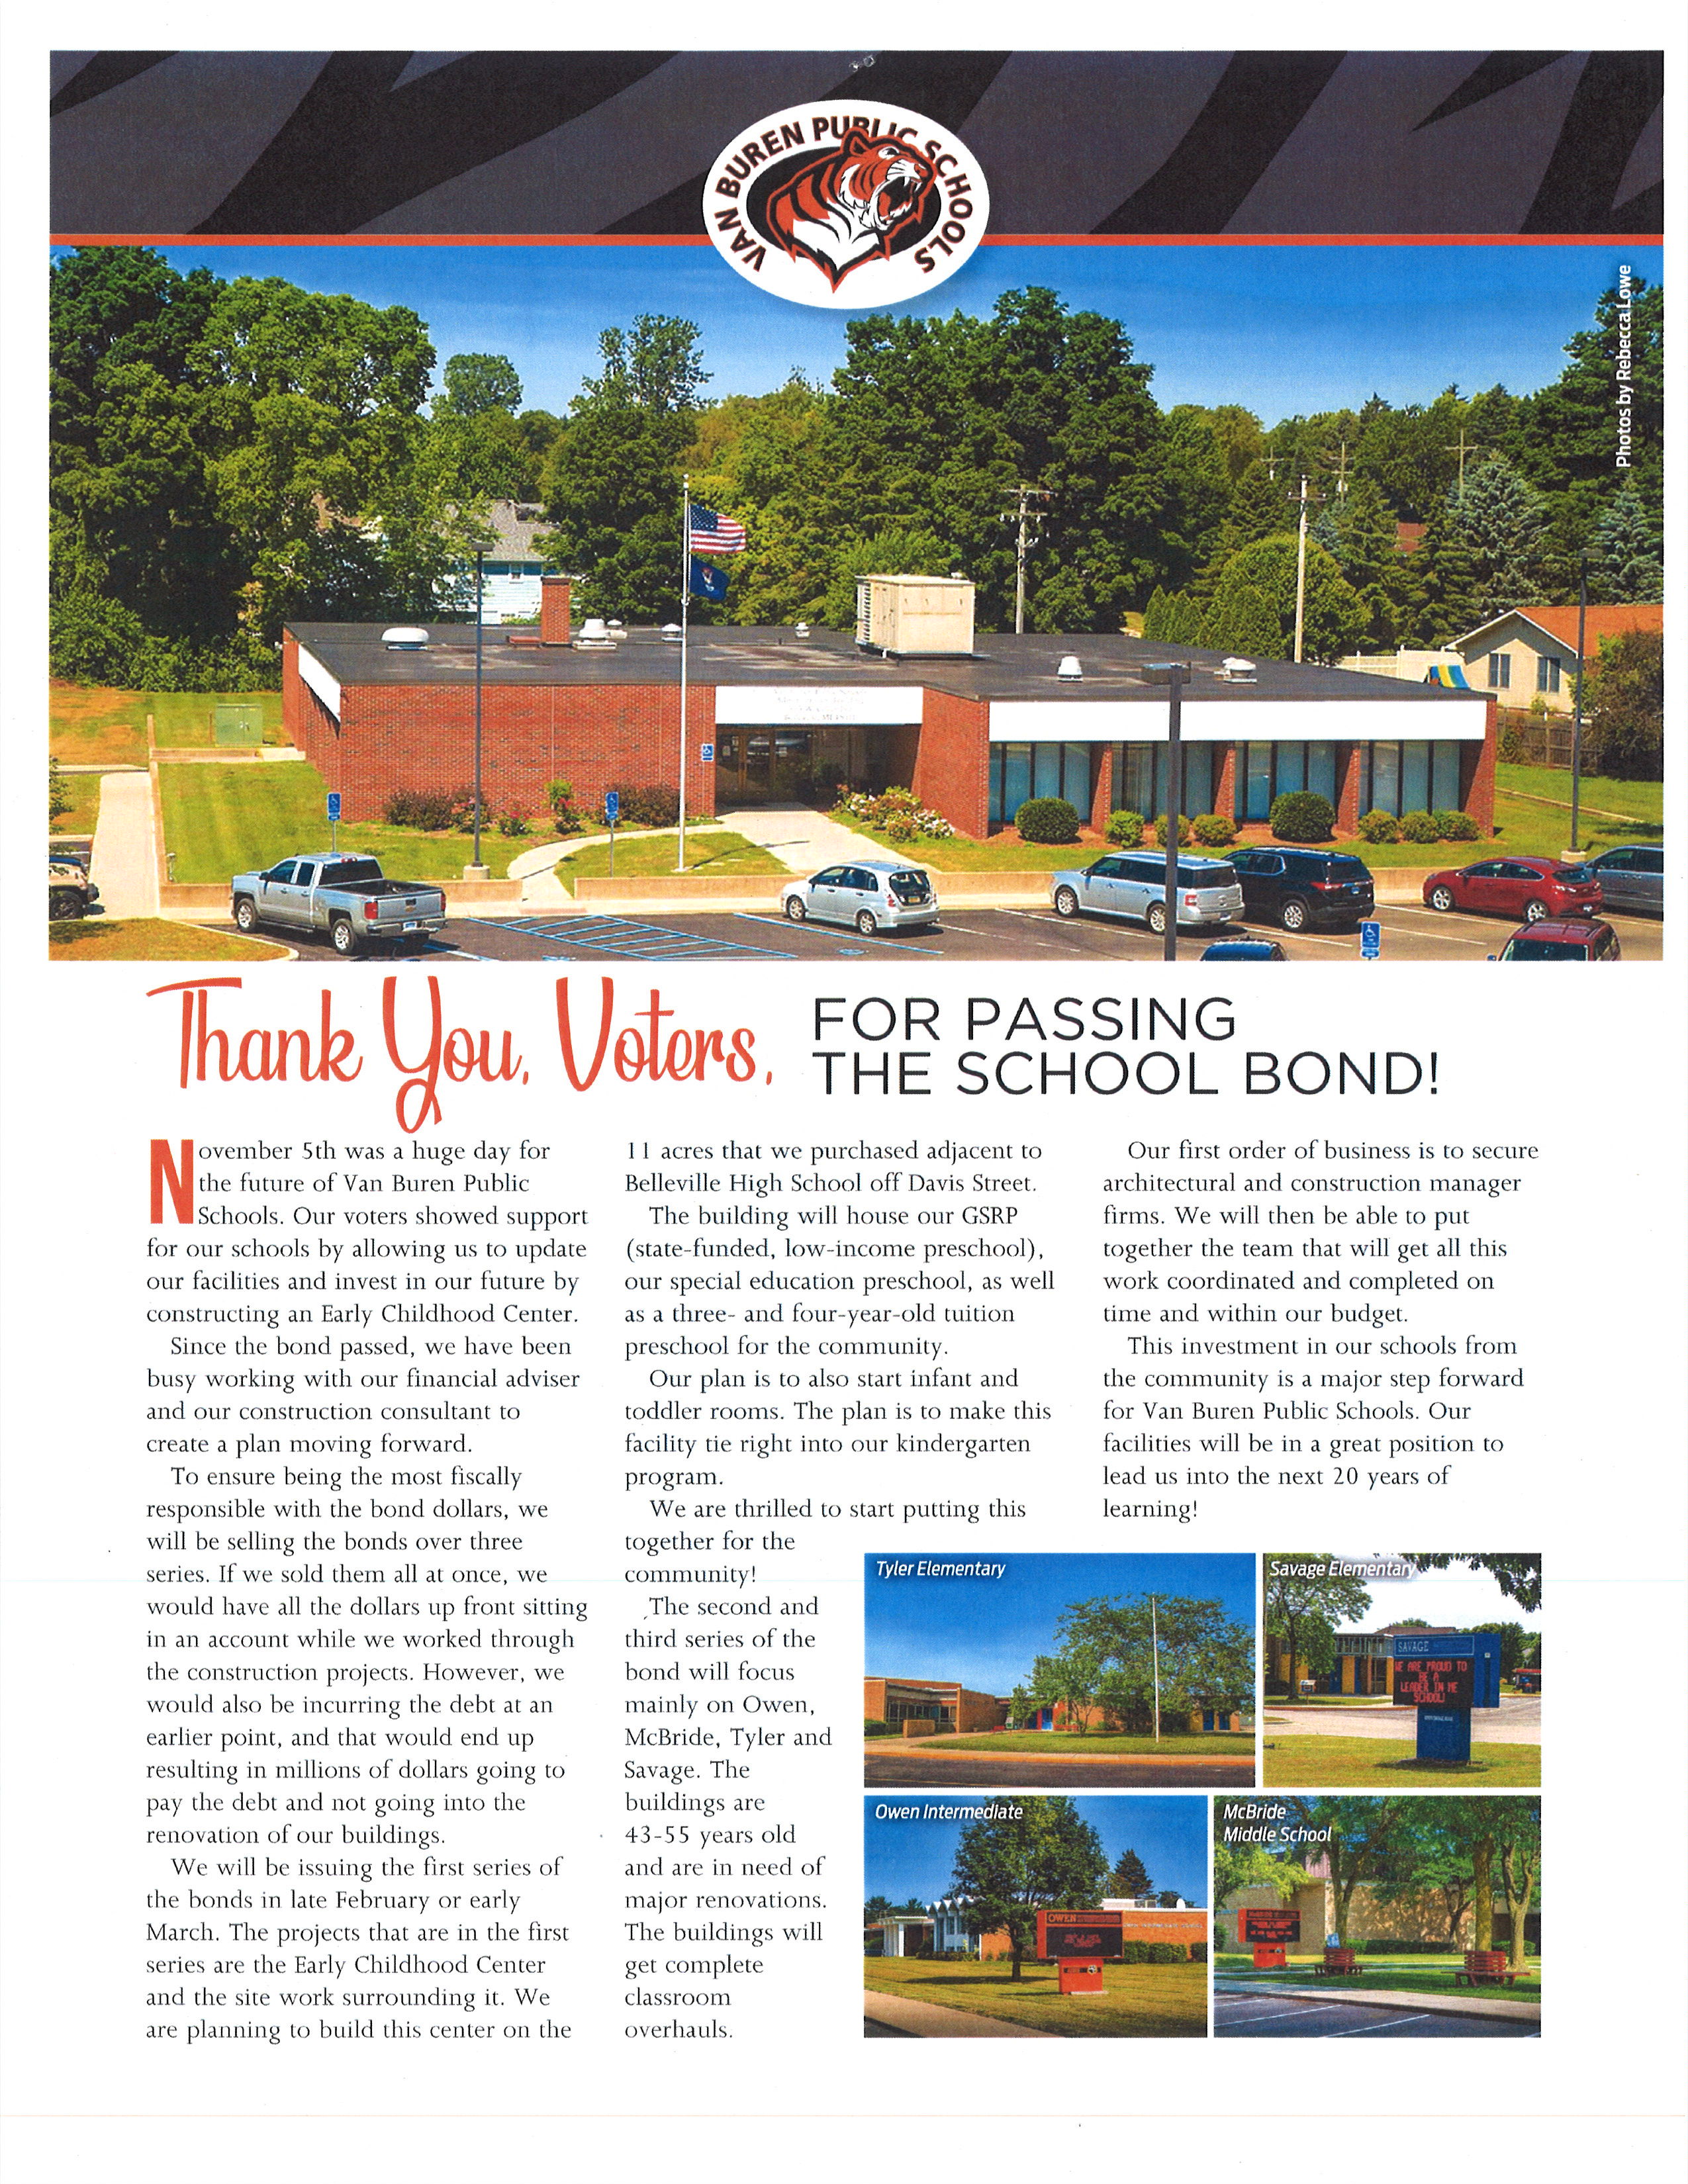 news article about van buren public schools passing their school bond